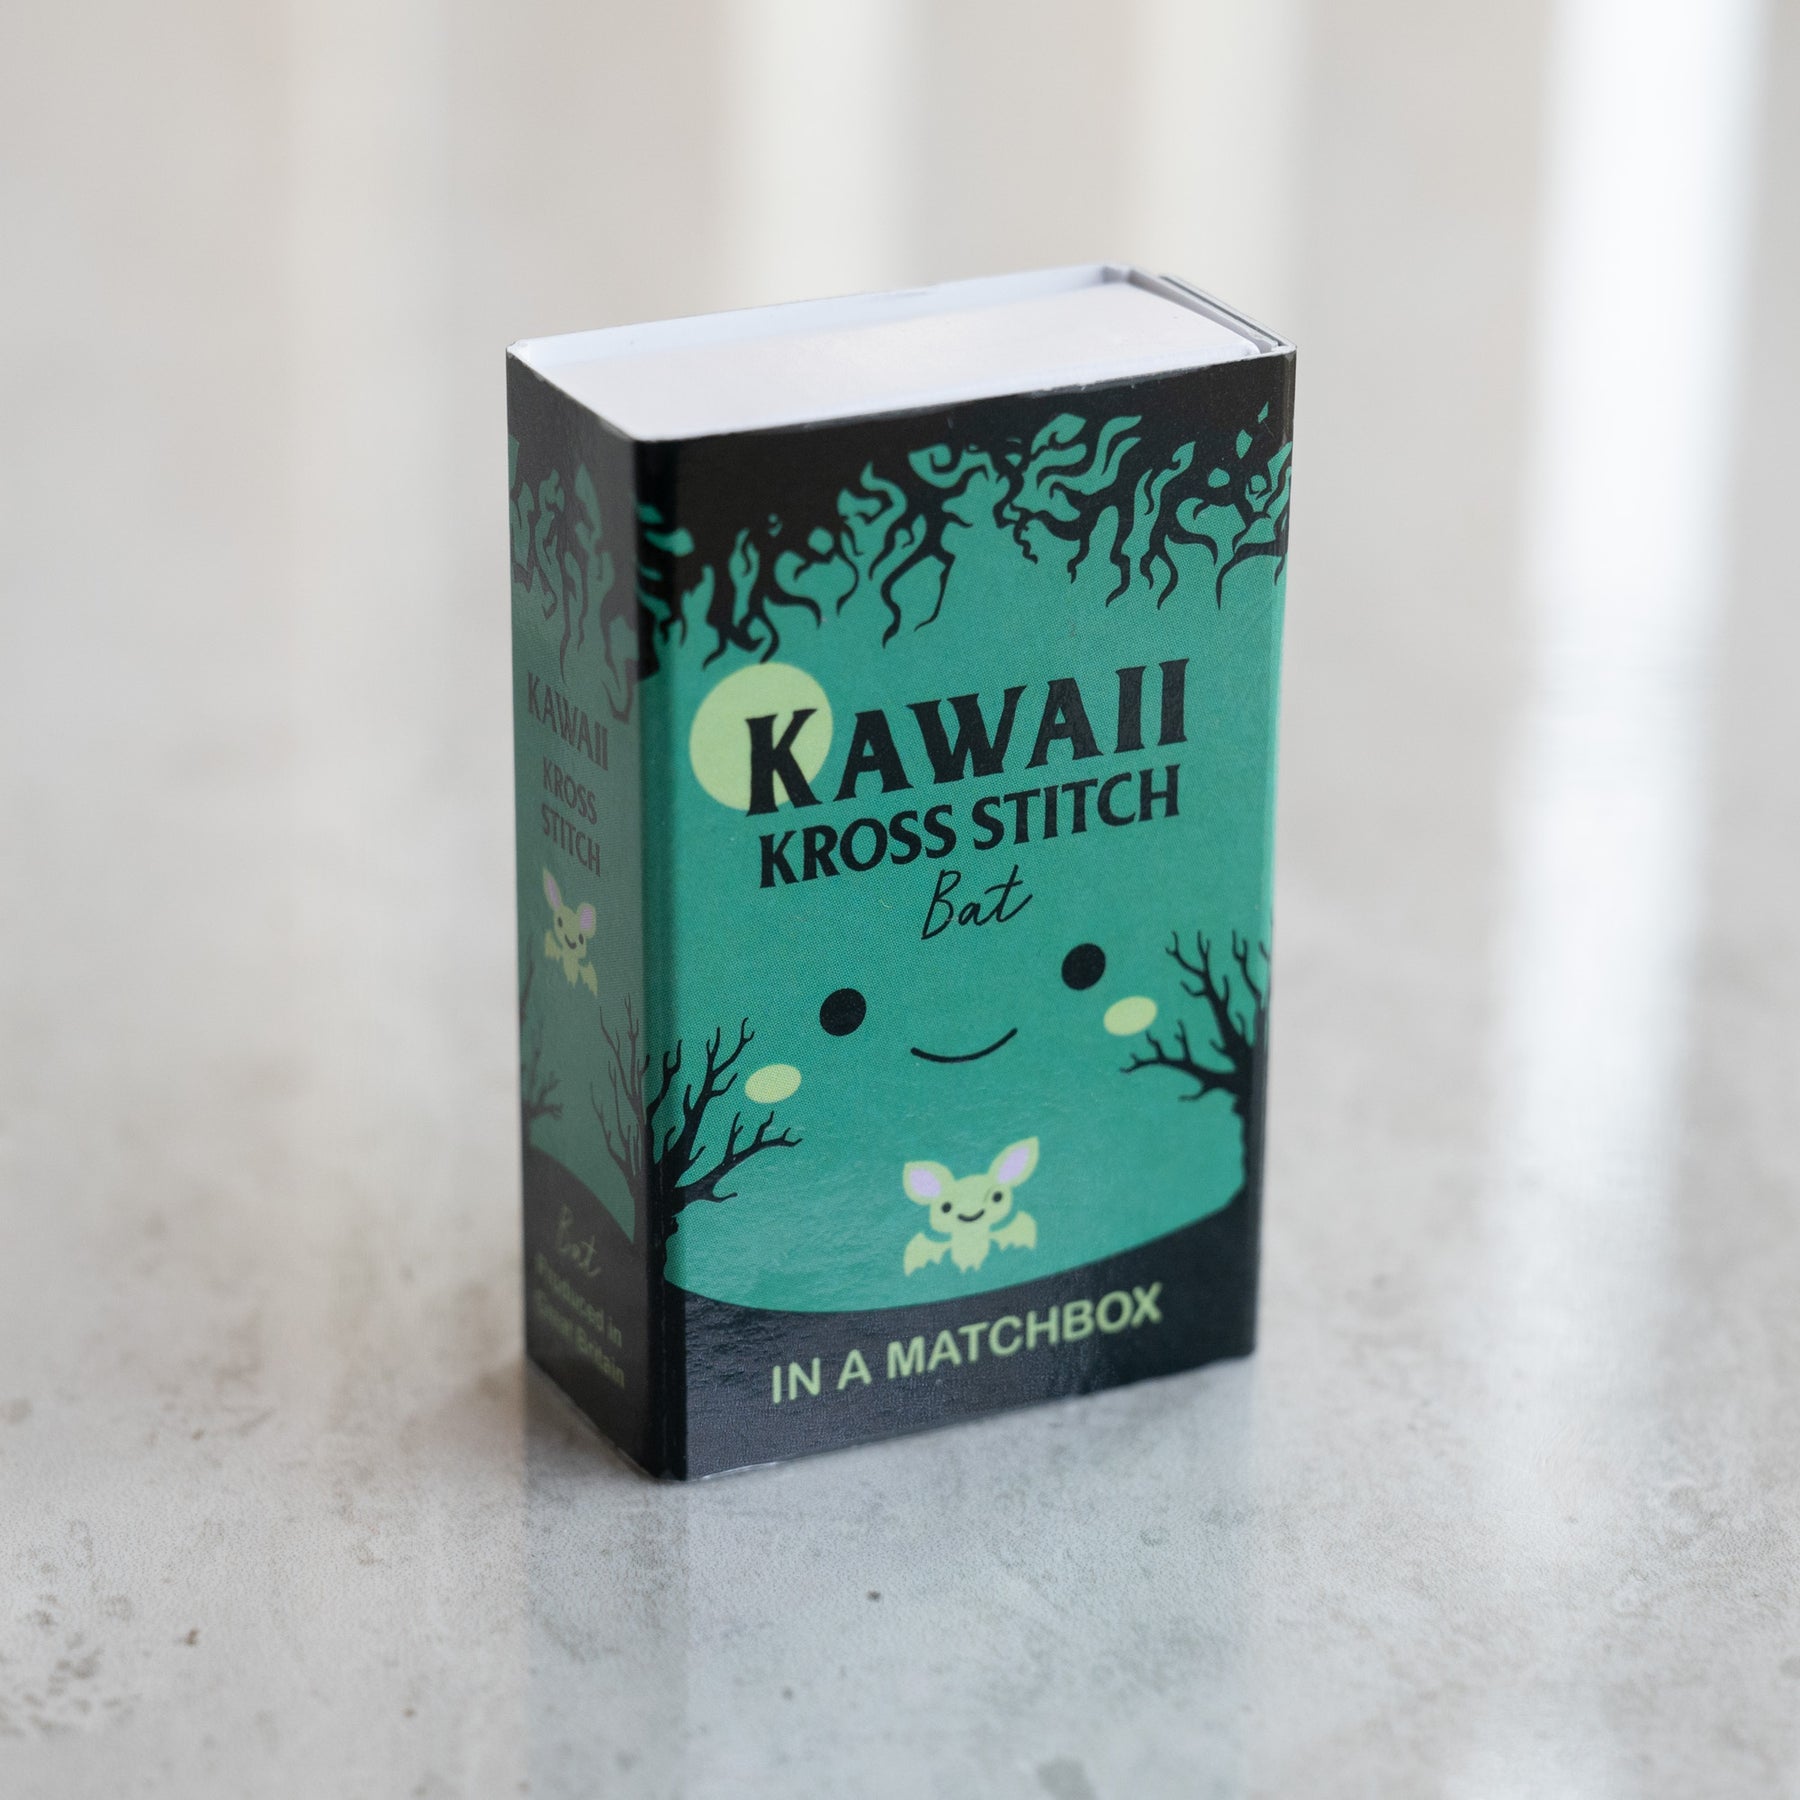 Mini Cross Stitch Kit With Kawaii Halloween Bat Design